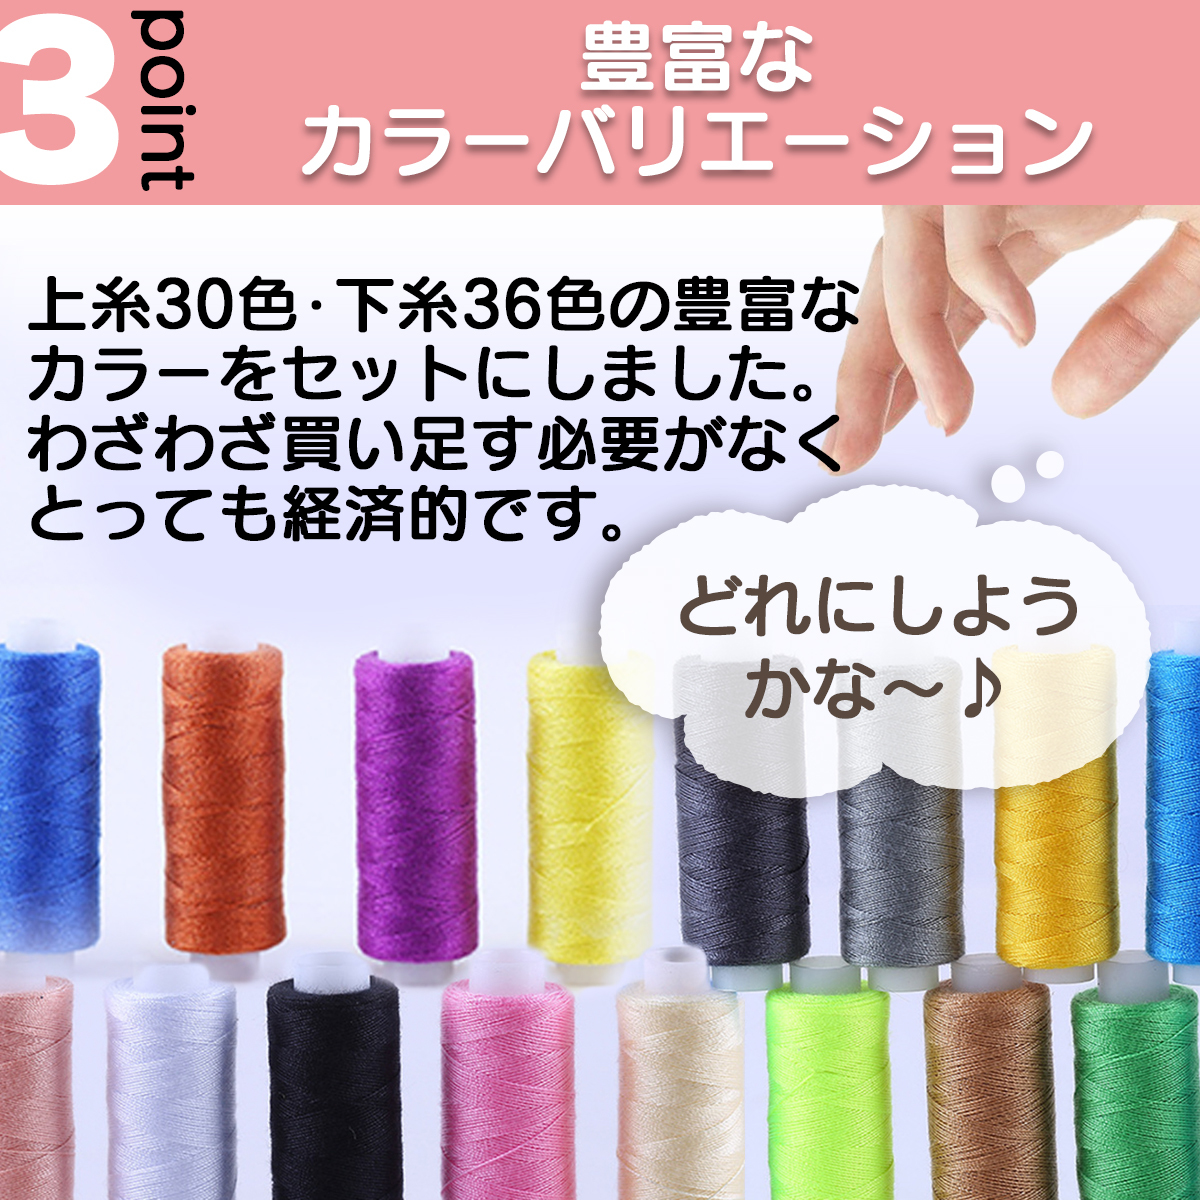 ミシン糸セット 上糸30色 下糸36色 ボビン糸付き 手縫い糸 常備糸 ポリエステル 刺繍糸 